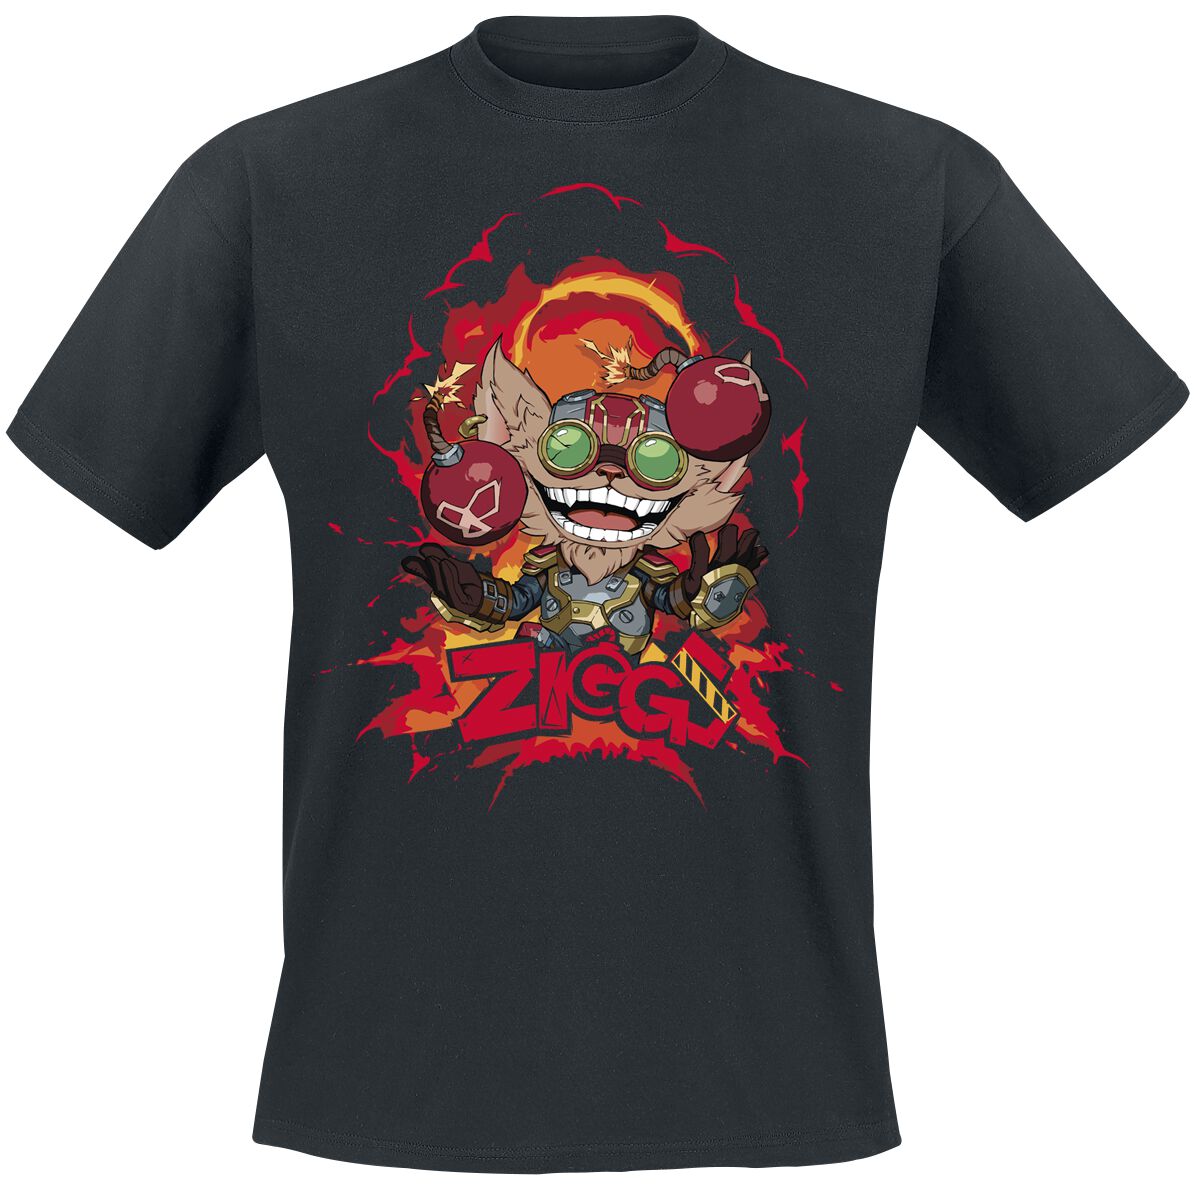 League Of Legends - Gaming T-Shirt - Ziggs - S bis XL - für Männer - Größe XL - schwarz  - EMP exklusives Merchandise!